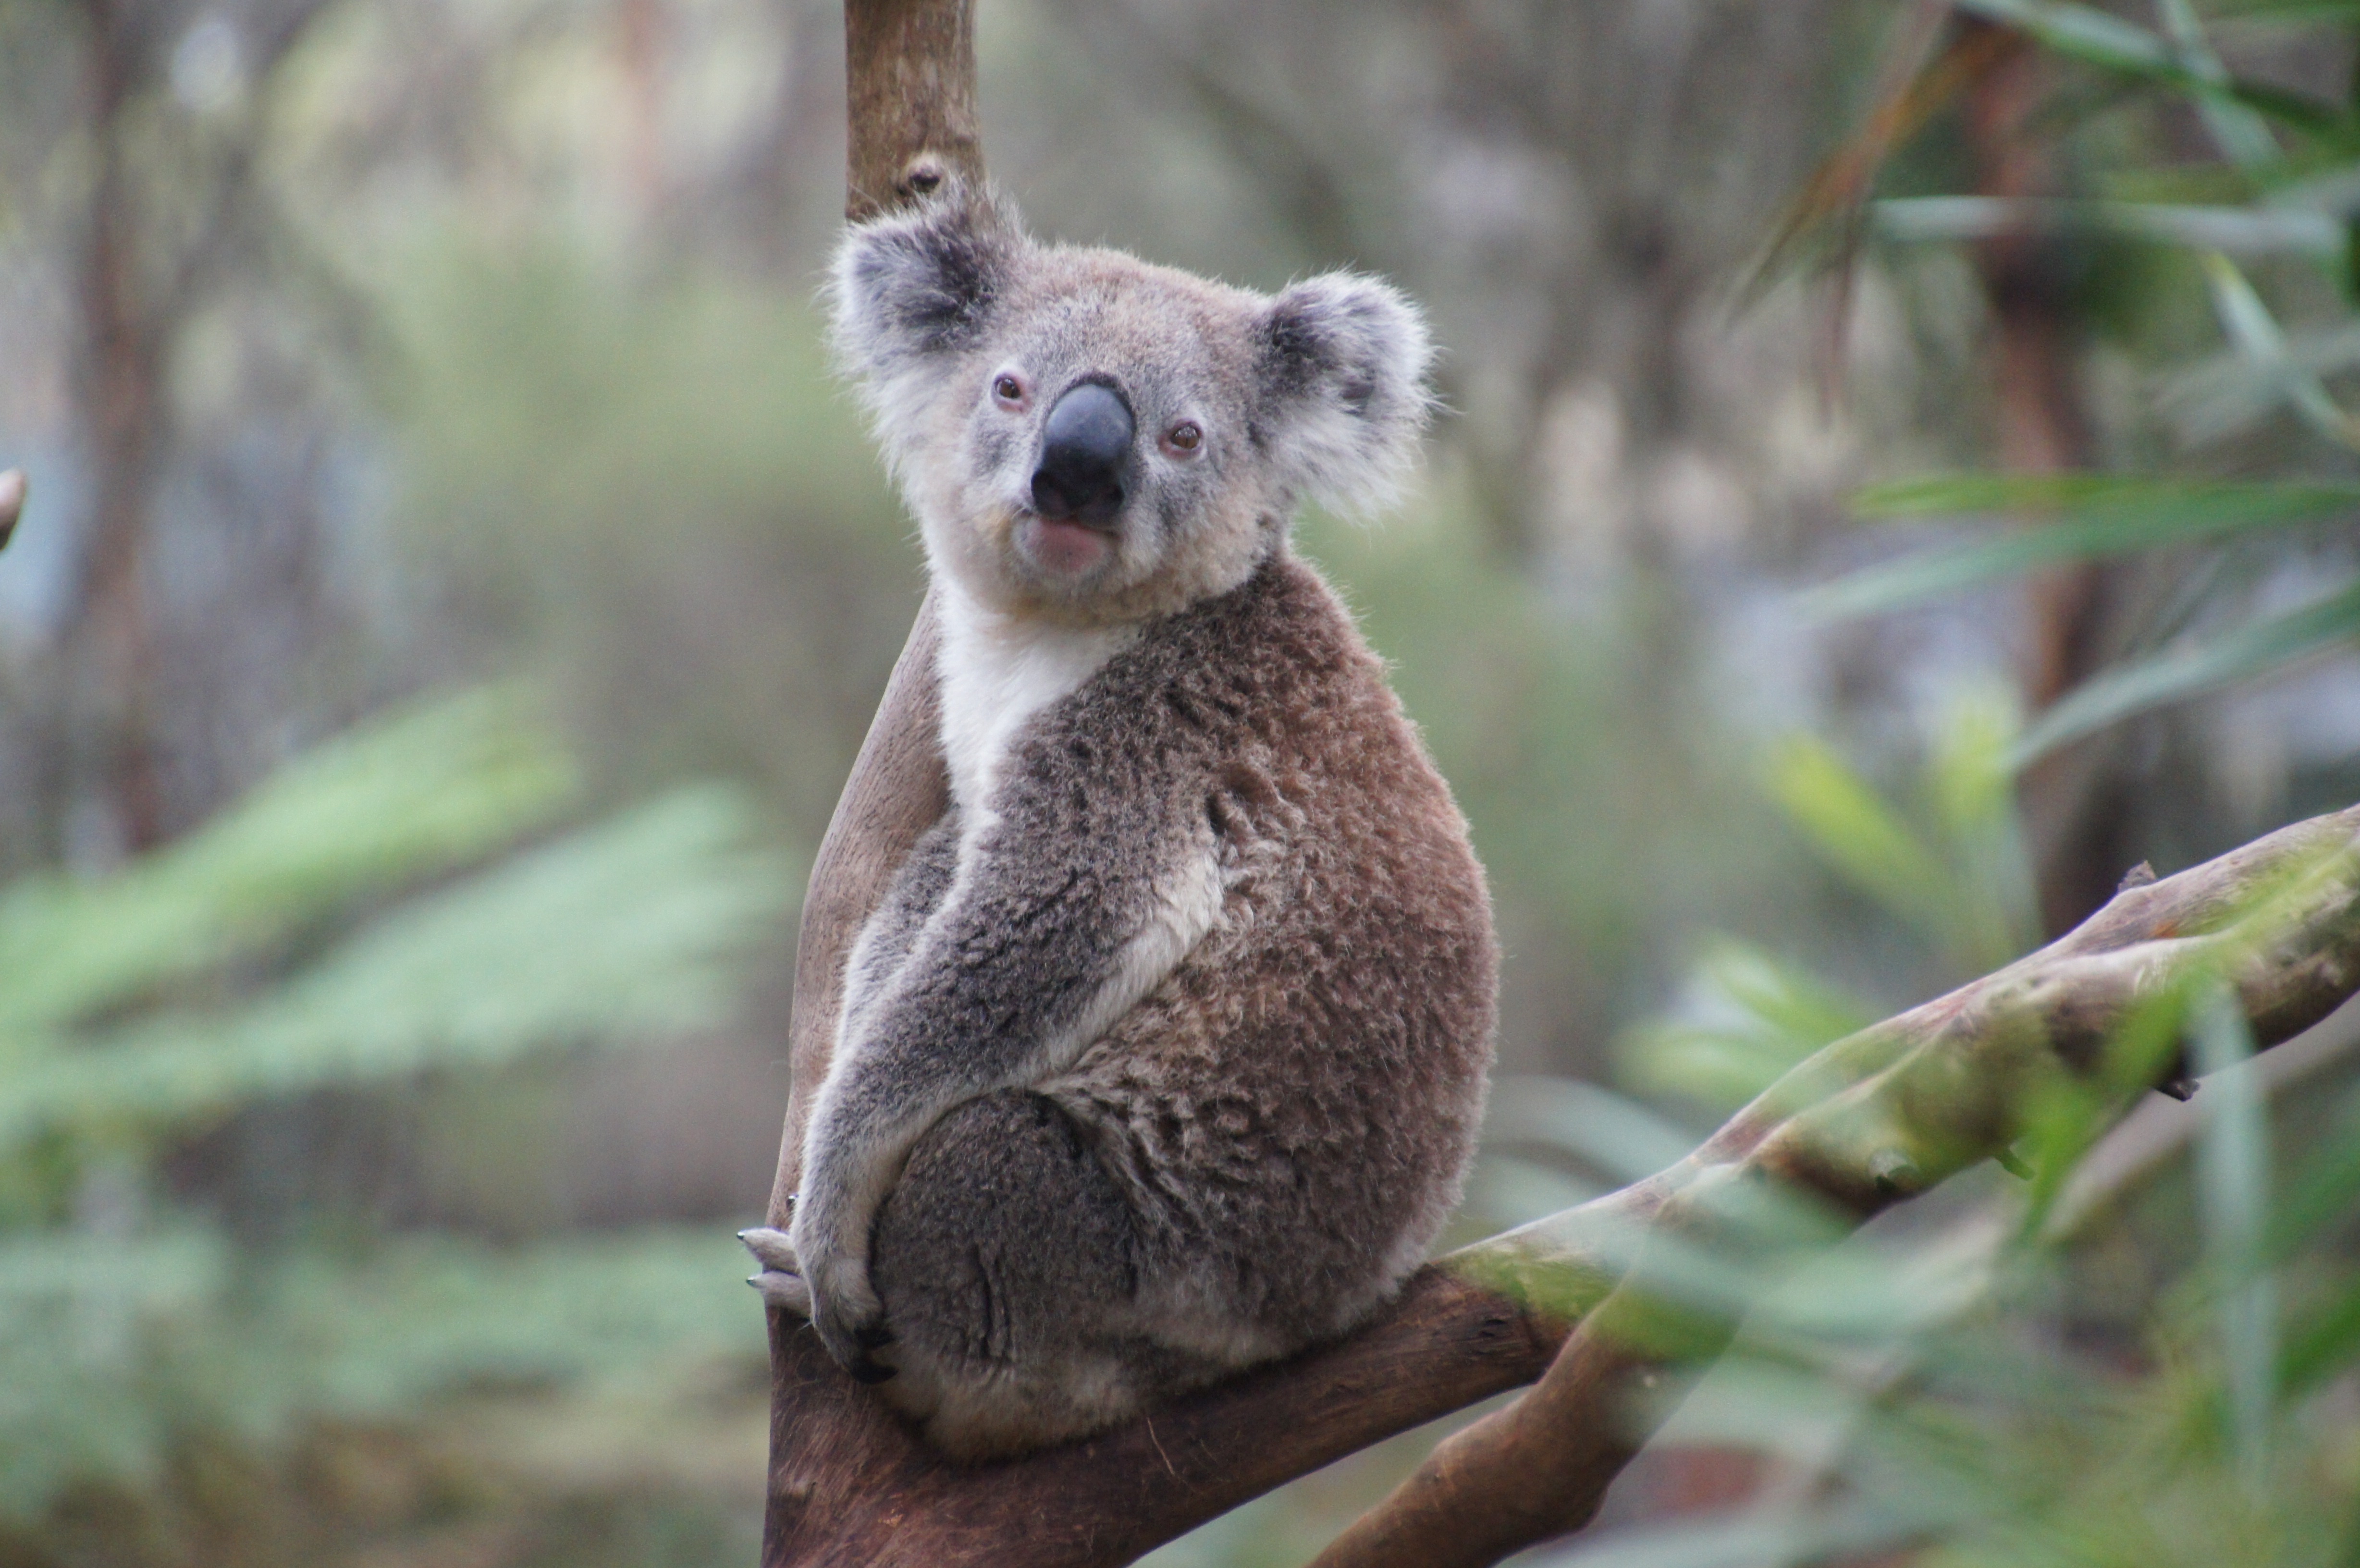 A lazy koala on a tree branch